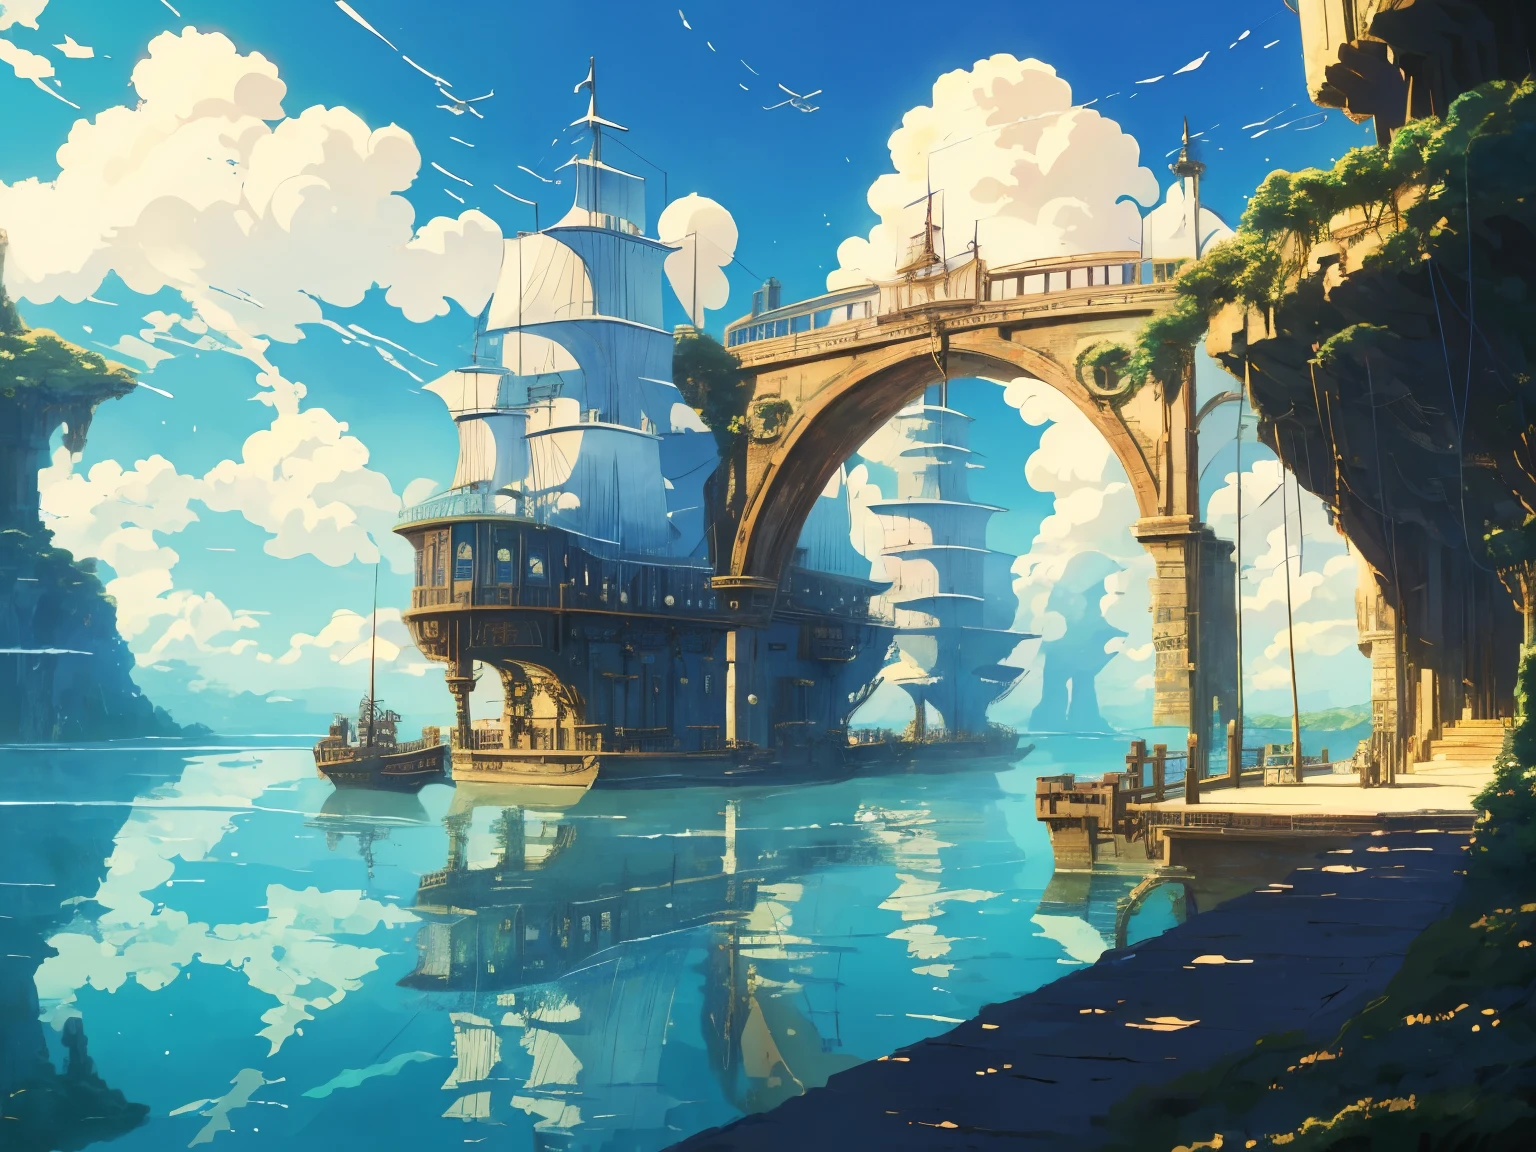 Скриншот DVD из фильма студии Ghibli, Красивый интерьер морского моста в стиле стимпанк, облака на голубом небе, дизайн Хаяо Миядзаки, ретро аниме